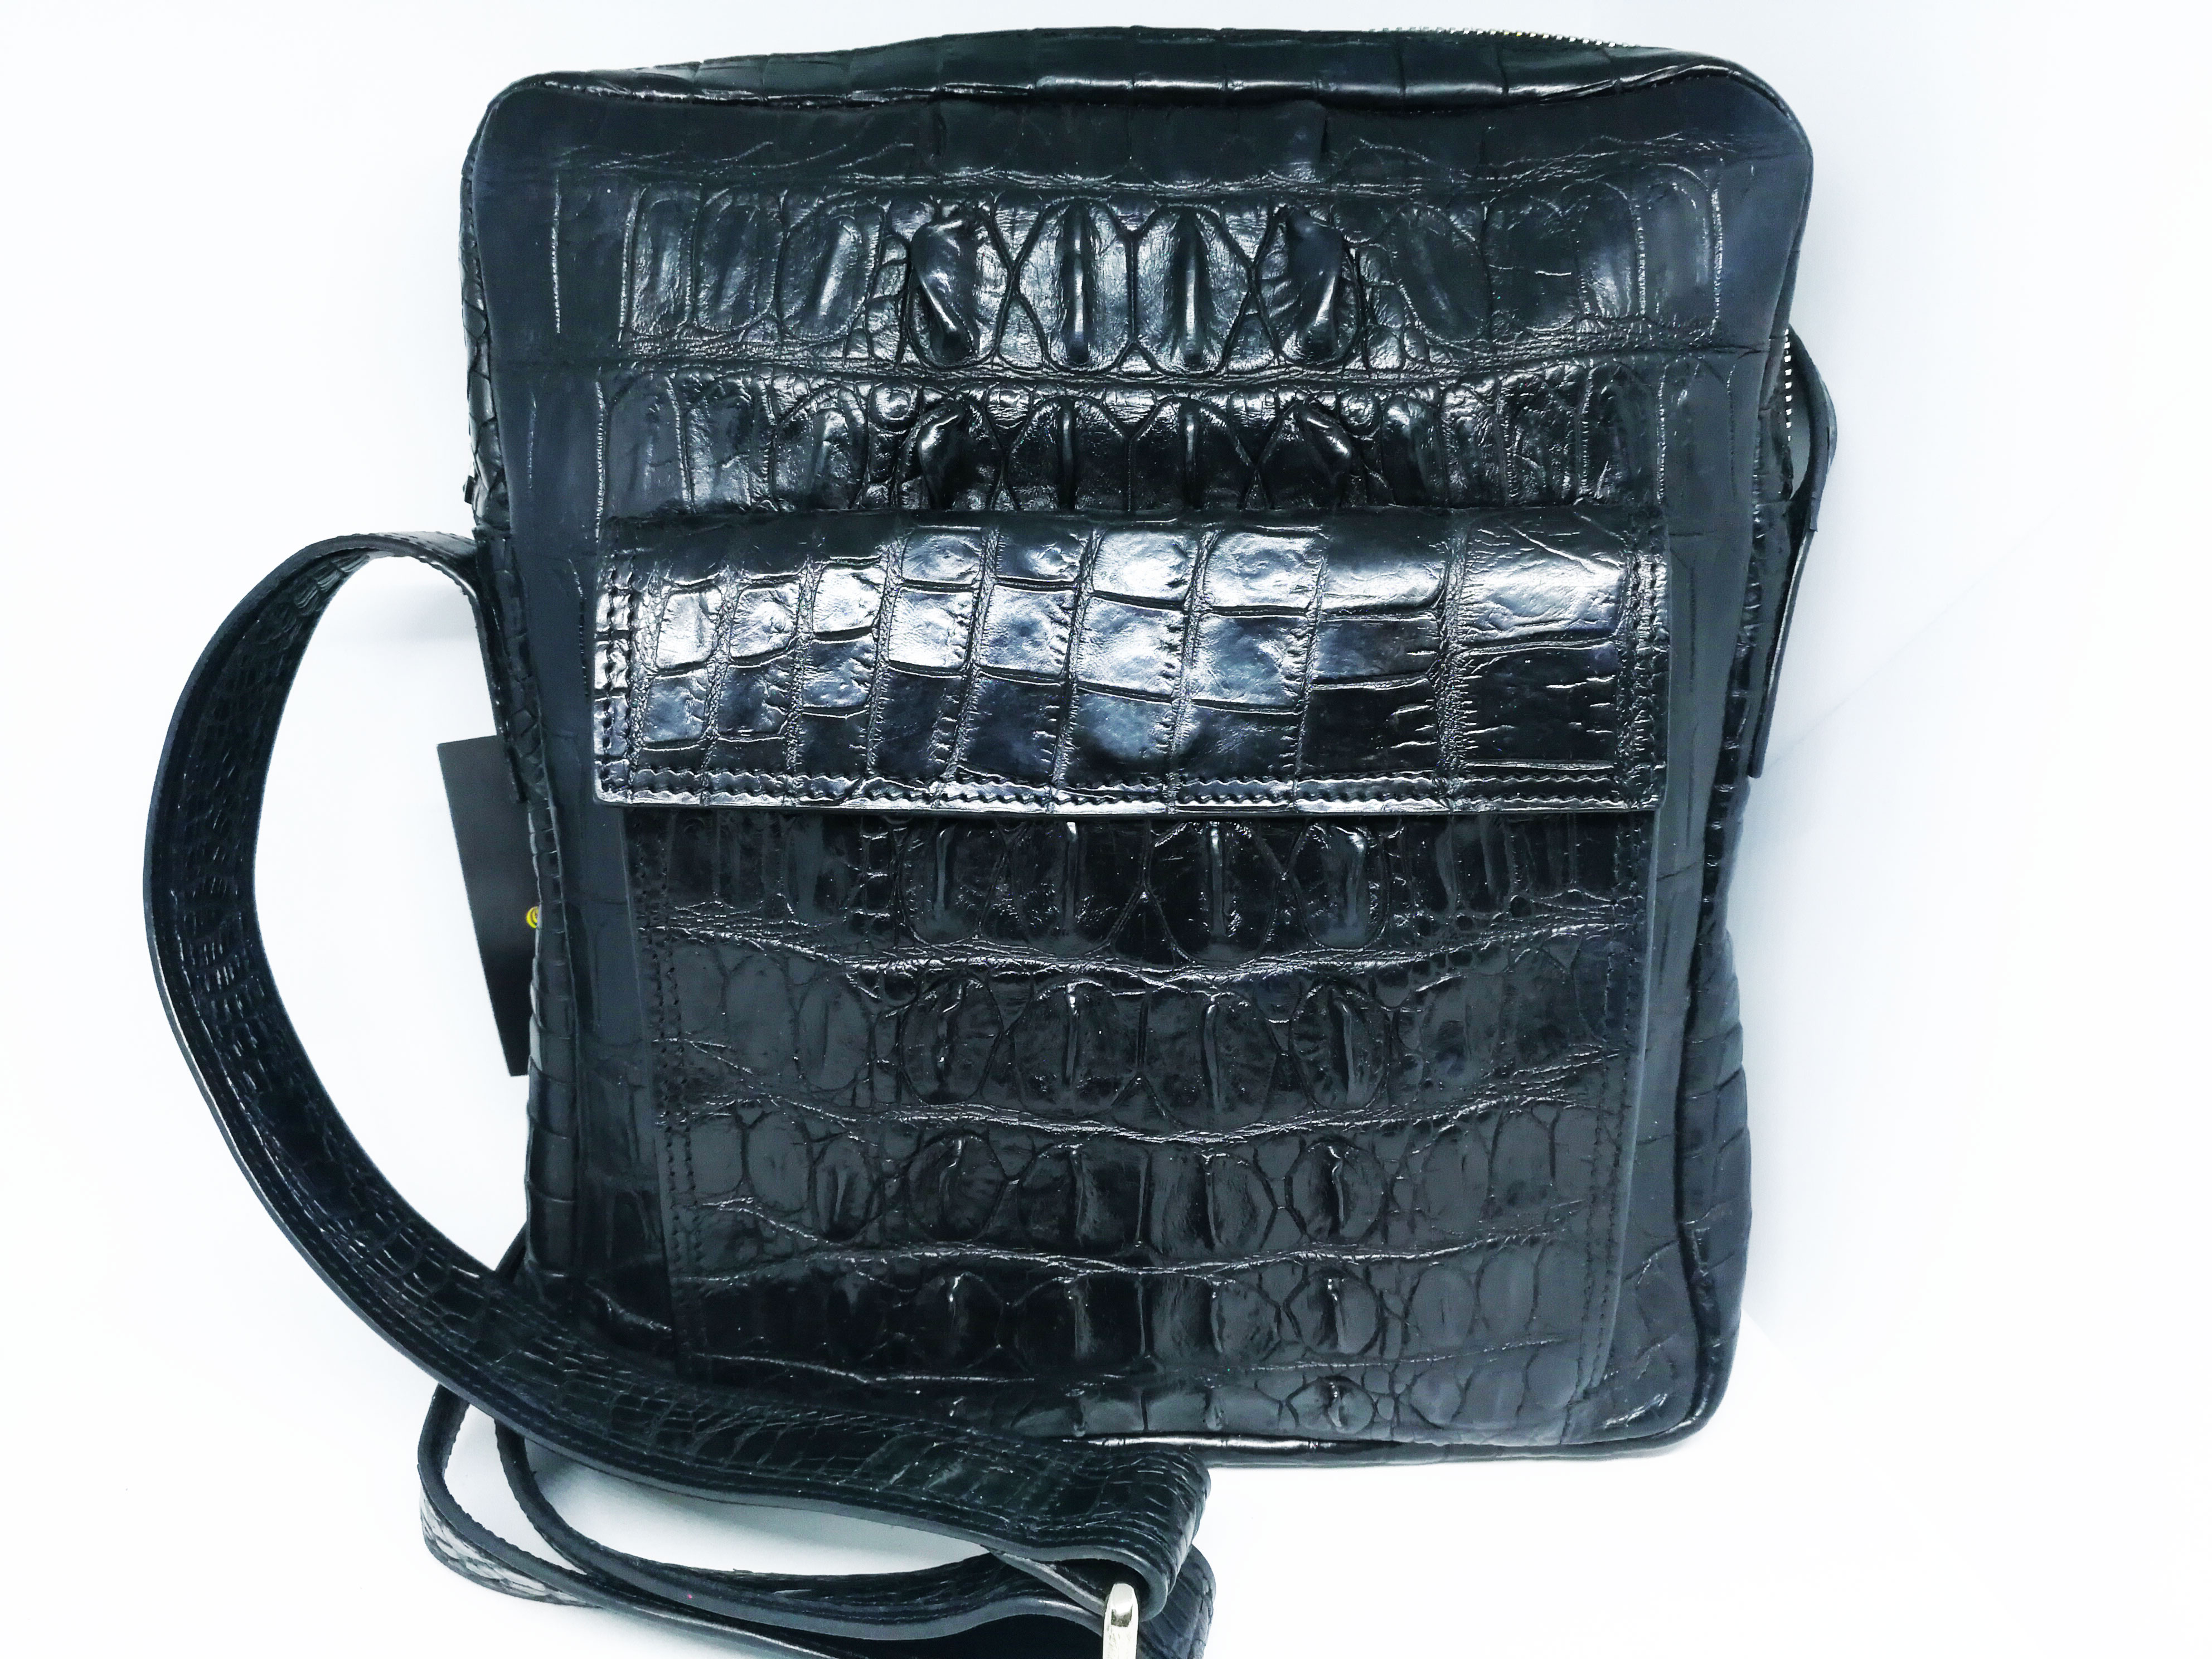 Black Crocodile Leather Messenger Bag #CRM367H-BL-01